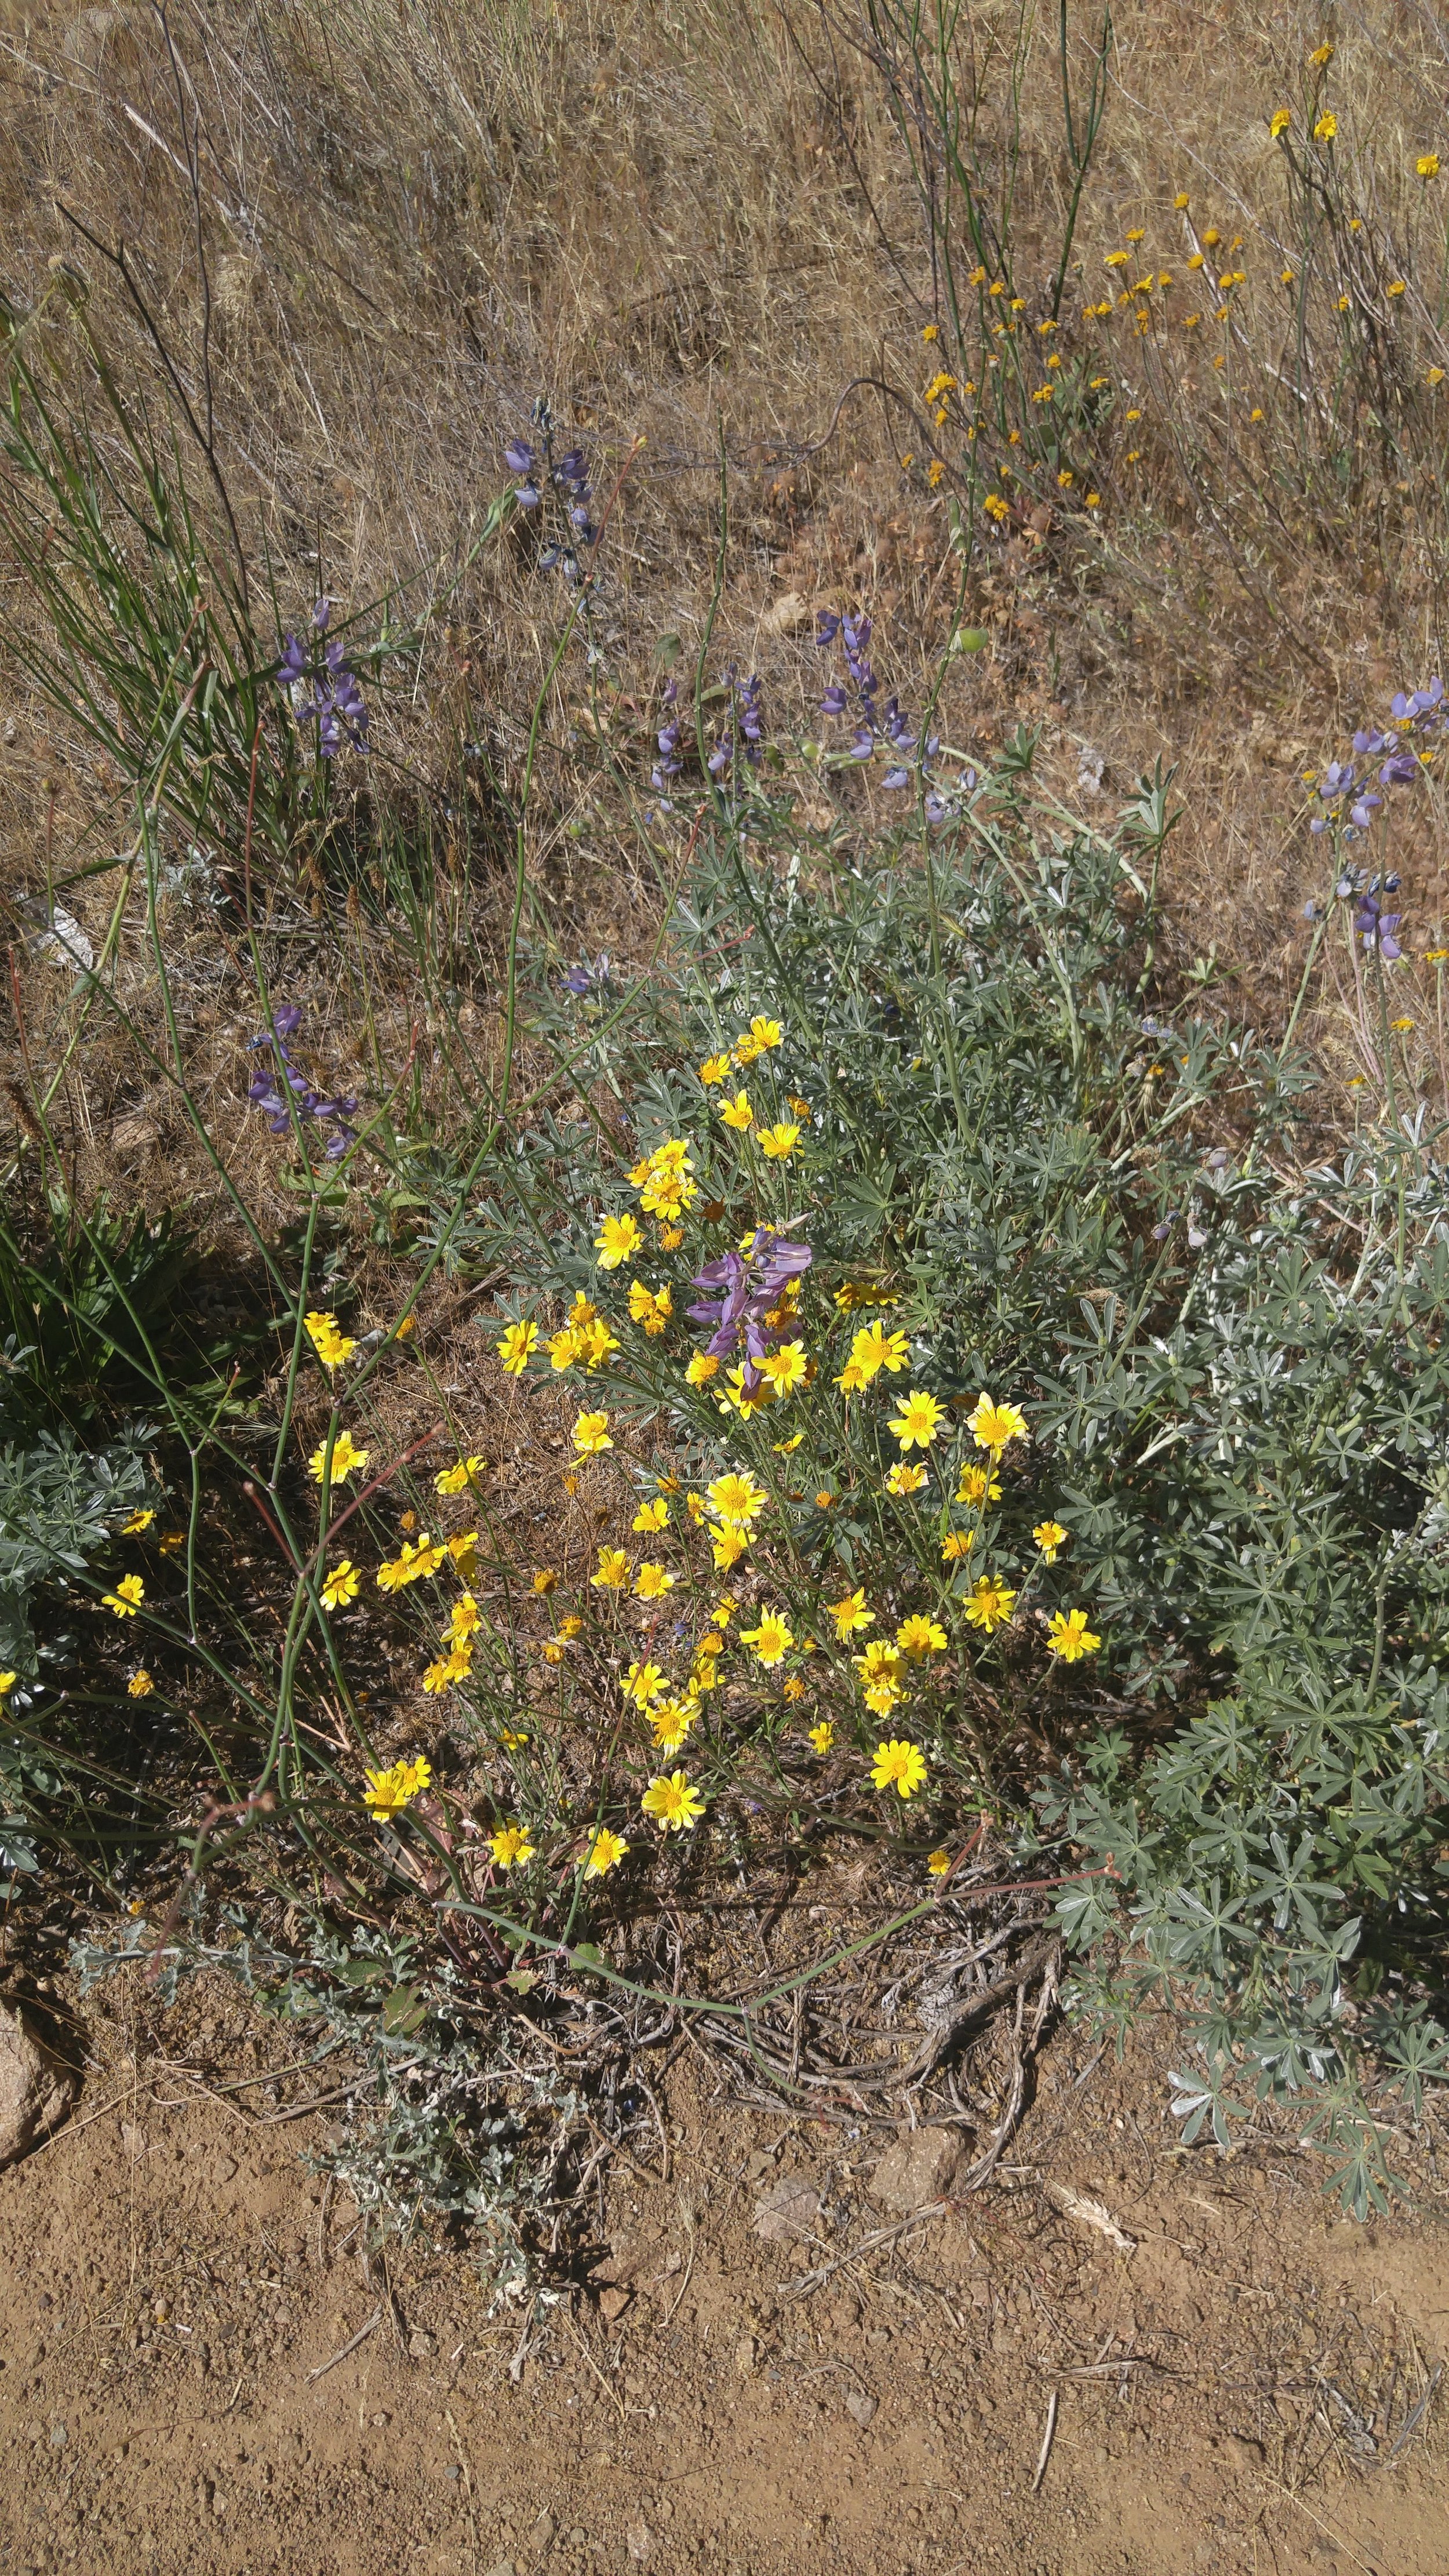  California sunshine ( Eriophyllum lanatum ) and lupine ( Lupinus argentus ) 